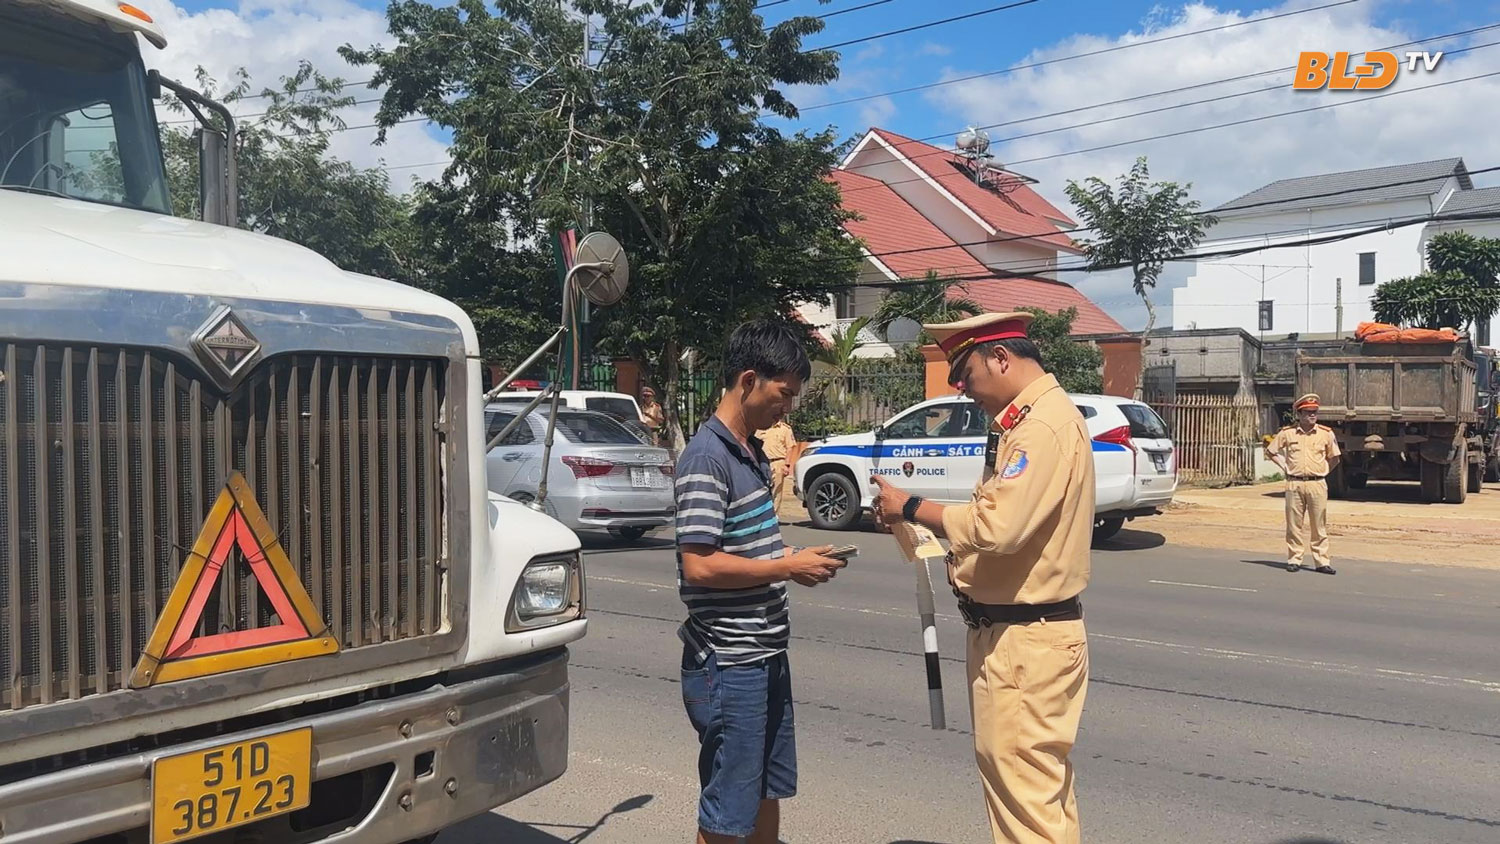 LÂM ĐỒNG NGÀY MỚI: Lâm Đồng xử lý nghiêm các phương tiện vận tải vi phạm